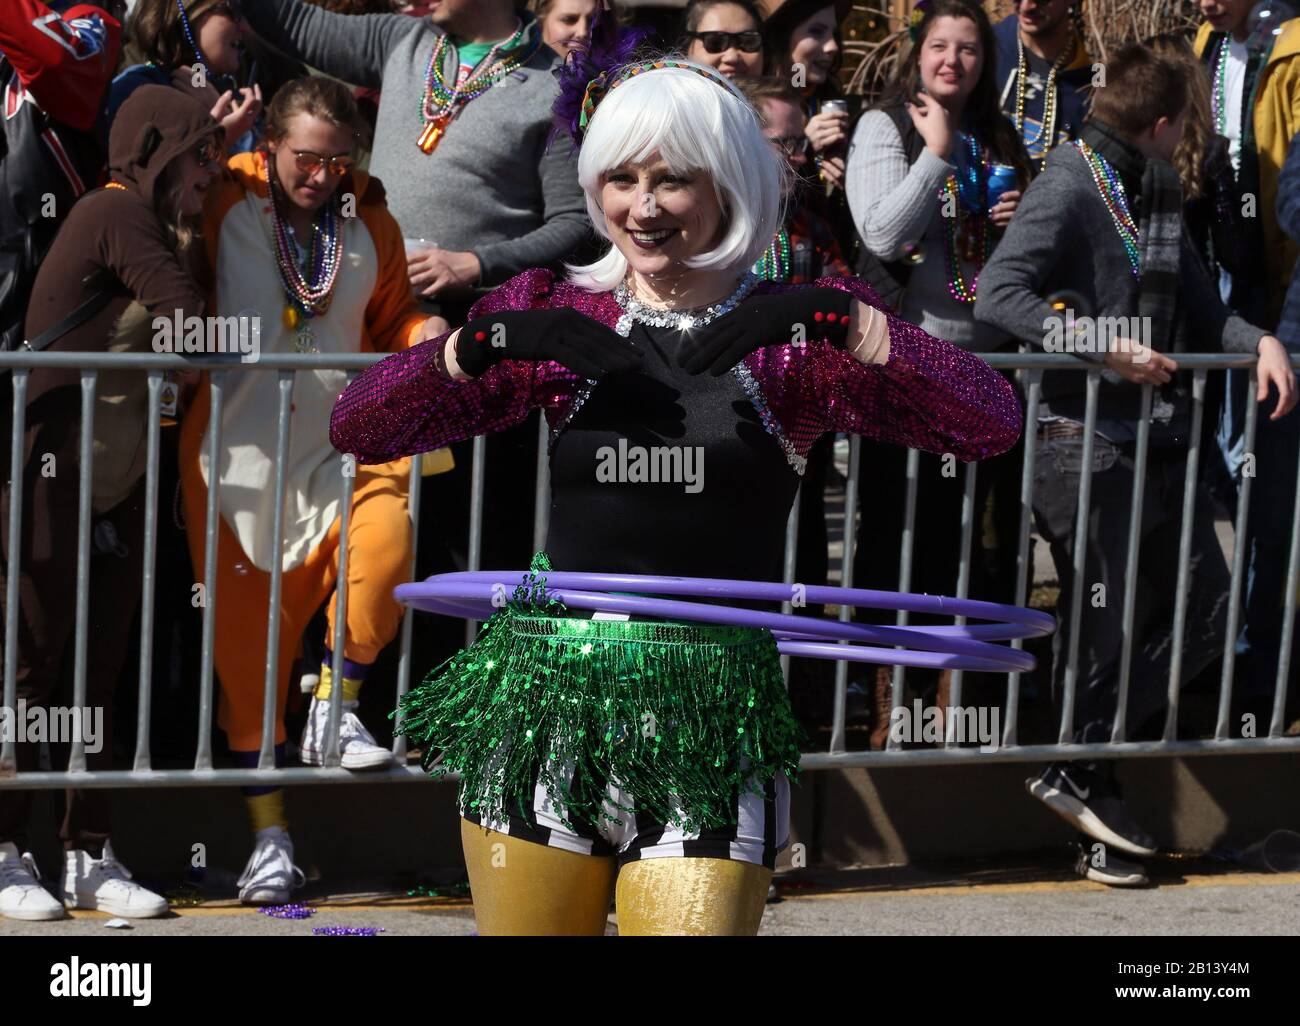 St. Louis, Estados Unidos. 22 de febrero de 2020. Un participante en el Desfile de St. Louis Mardi Gras, actúa con hoops hula en St. Louis el sábado, 22 de febrero de 2020. Foto de Bill Greenblatt/UPI crédito: UPI/Alamy Live News Foto de stock